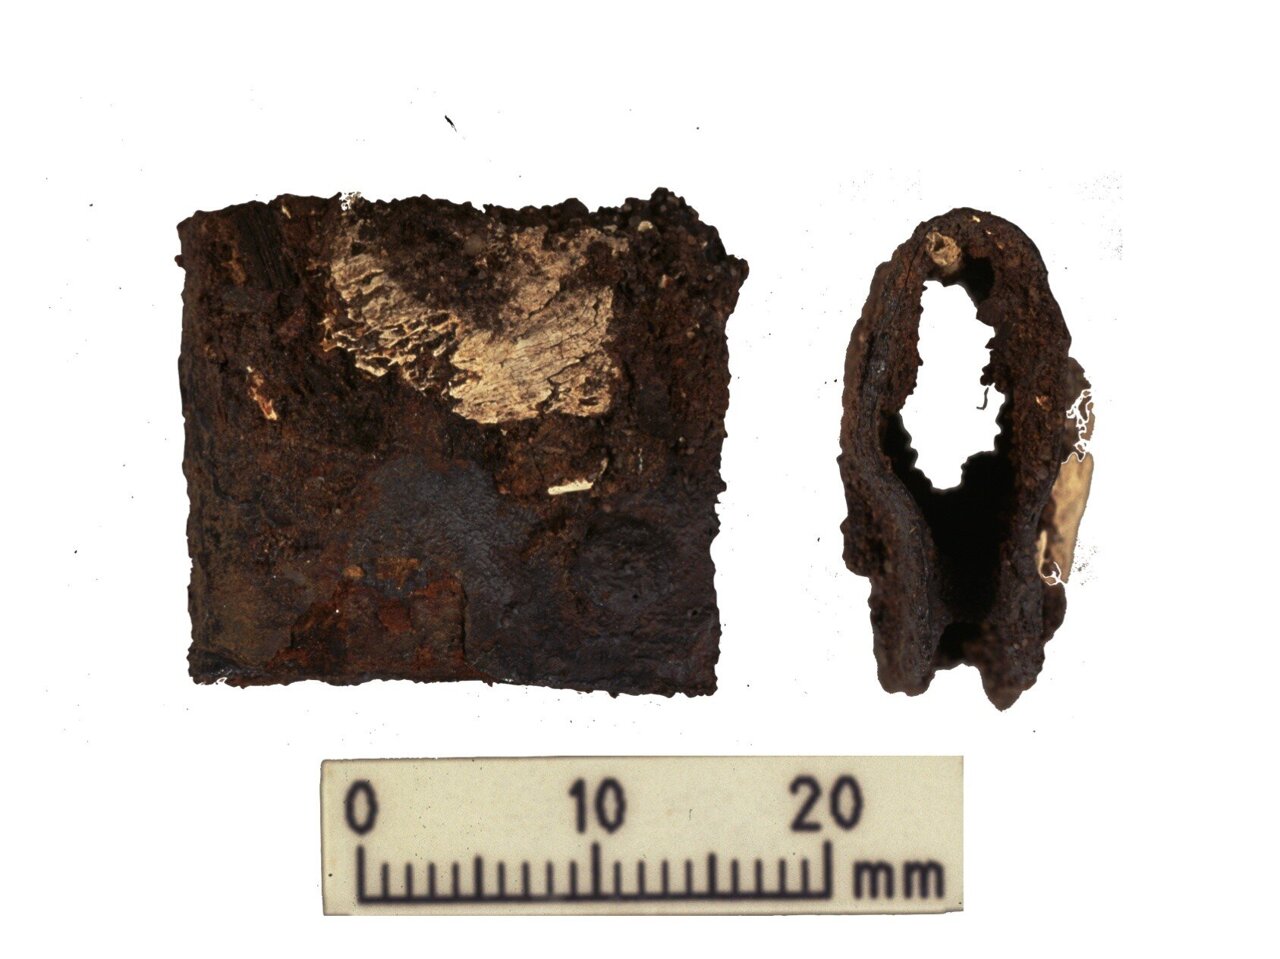 1998-2000년 최초 발굴에서 발견된 바이킹 전사의 방패에서 걸쇠. 걸쇠는 최근 연구에서 분석된 인간 및 동물 유해와 같은 무덤에서 발견되었습니다.